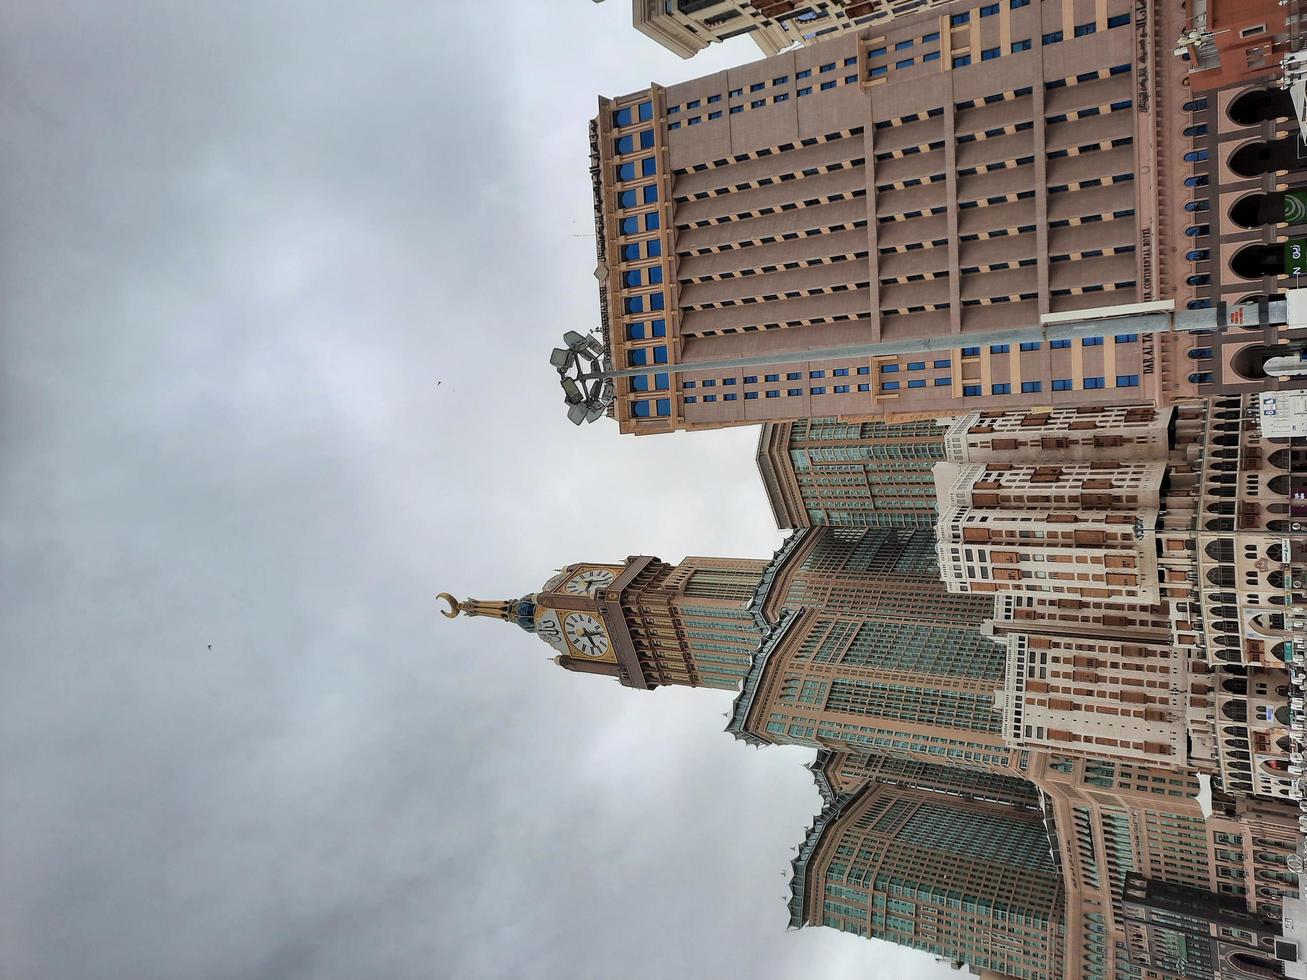 makkah, arabia saudita, 2021 - hermosa vista de la torre del reloj real makkah foto